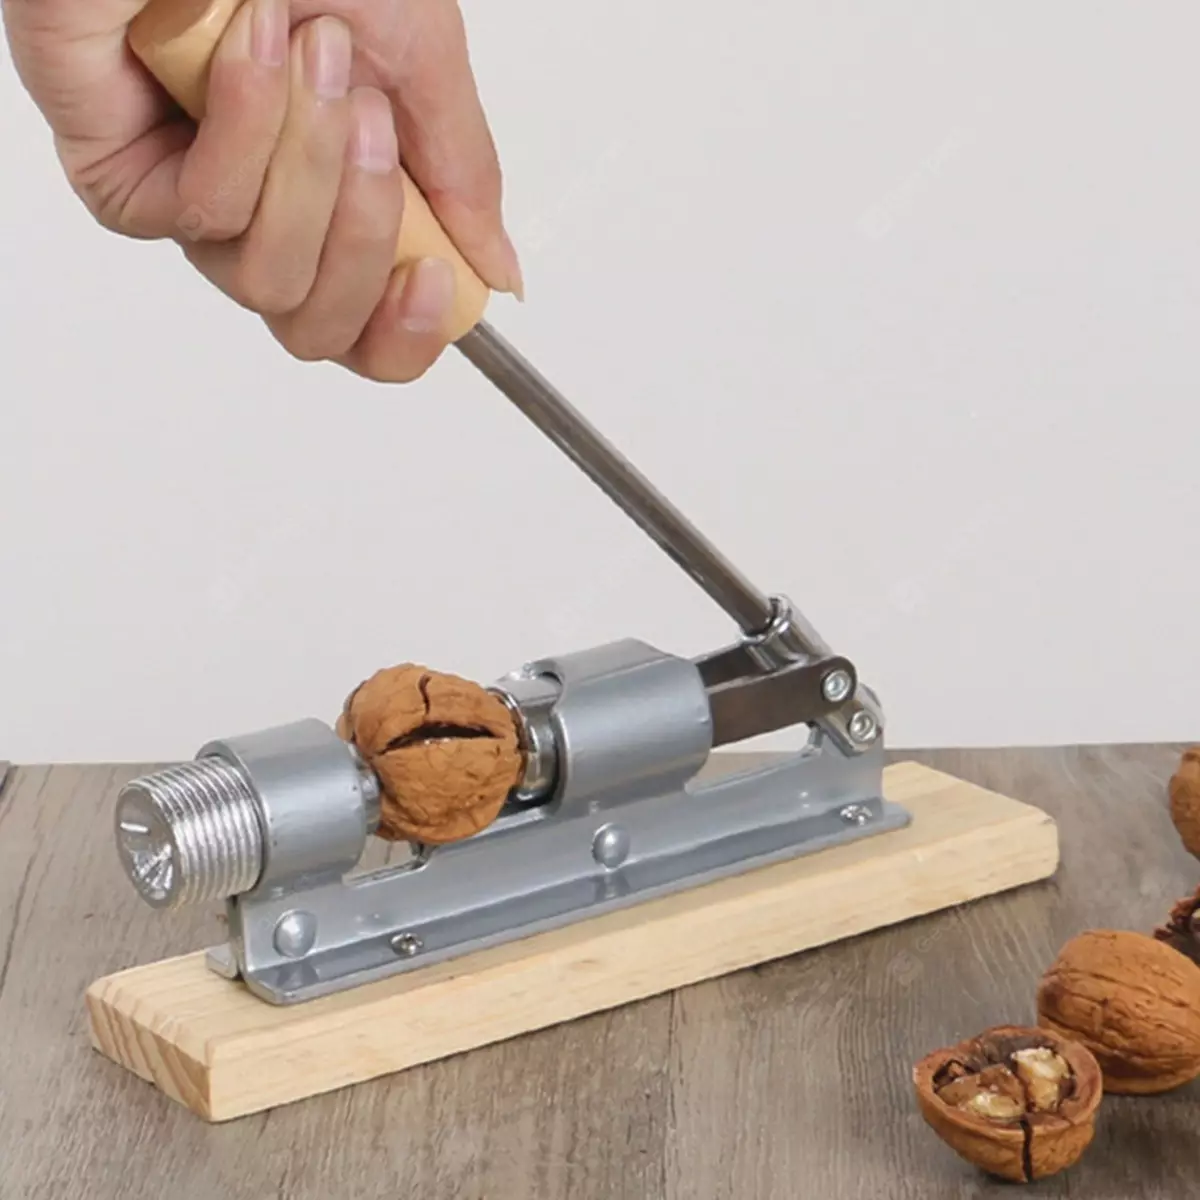 Orekhokol: ලා දුඹුරු සඳහා walnuts සහ Cedar සඳහා. ඇට වර්ග, ලී සහ වෙනත් ඇවිදින්නන් යන මුදු සඳහා 